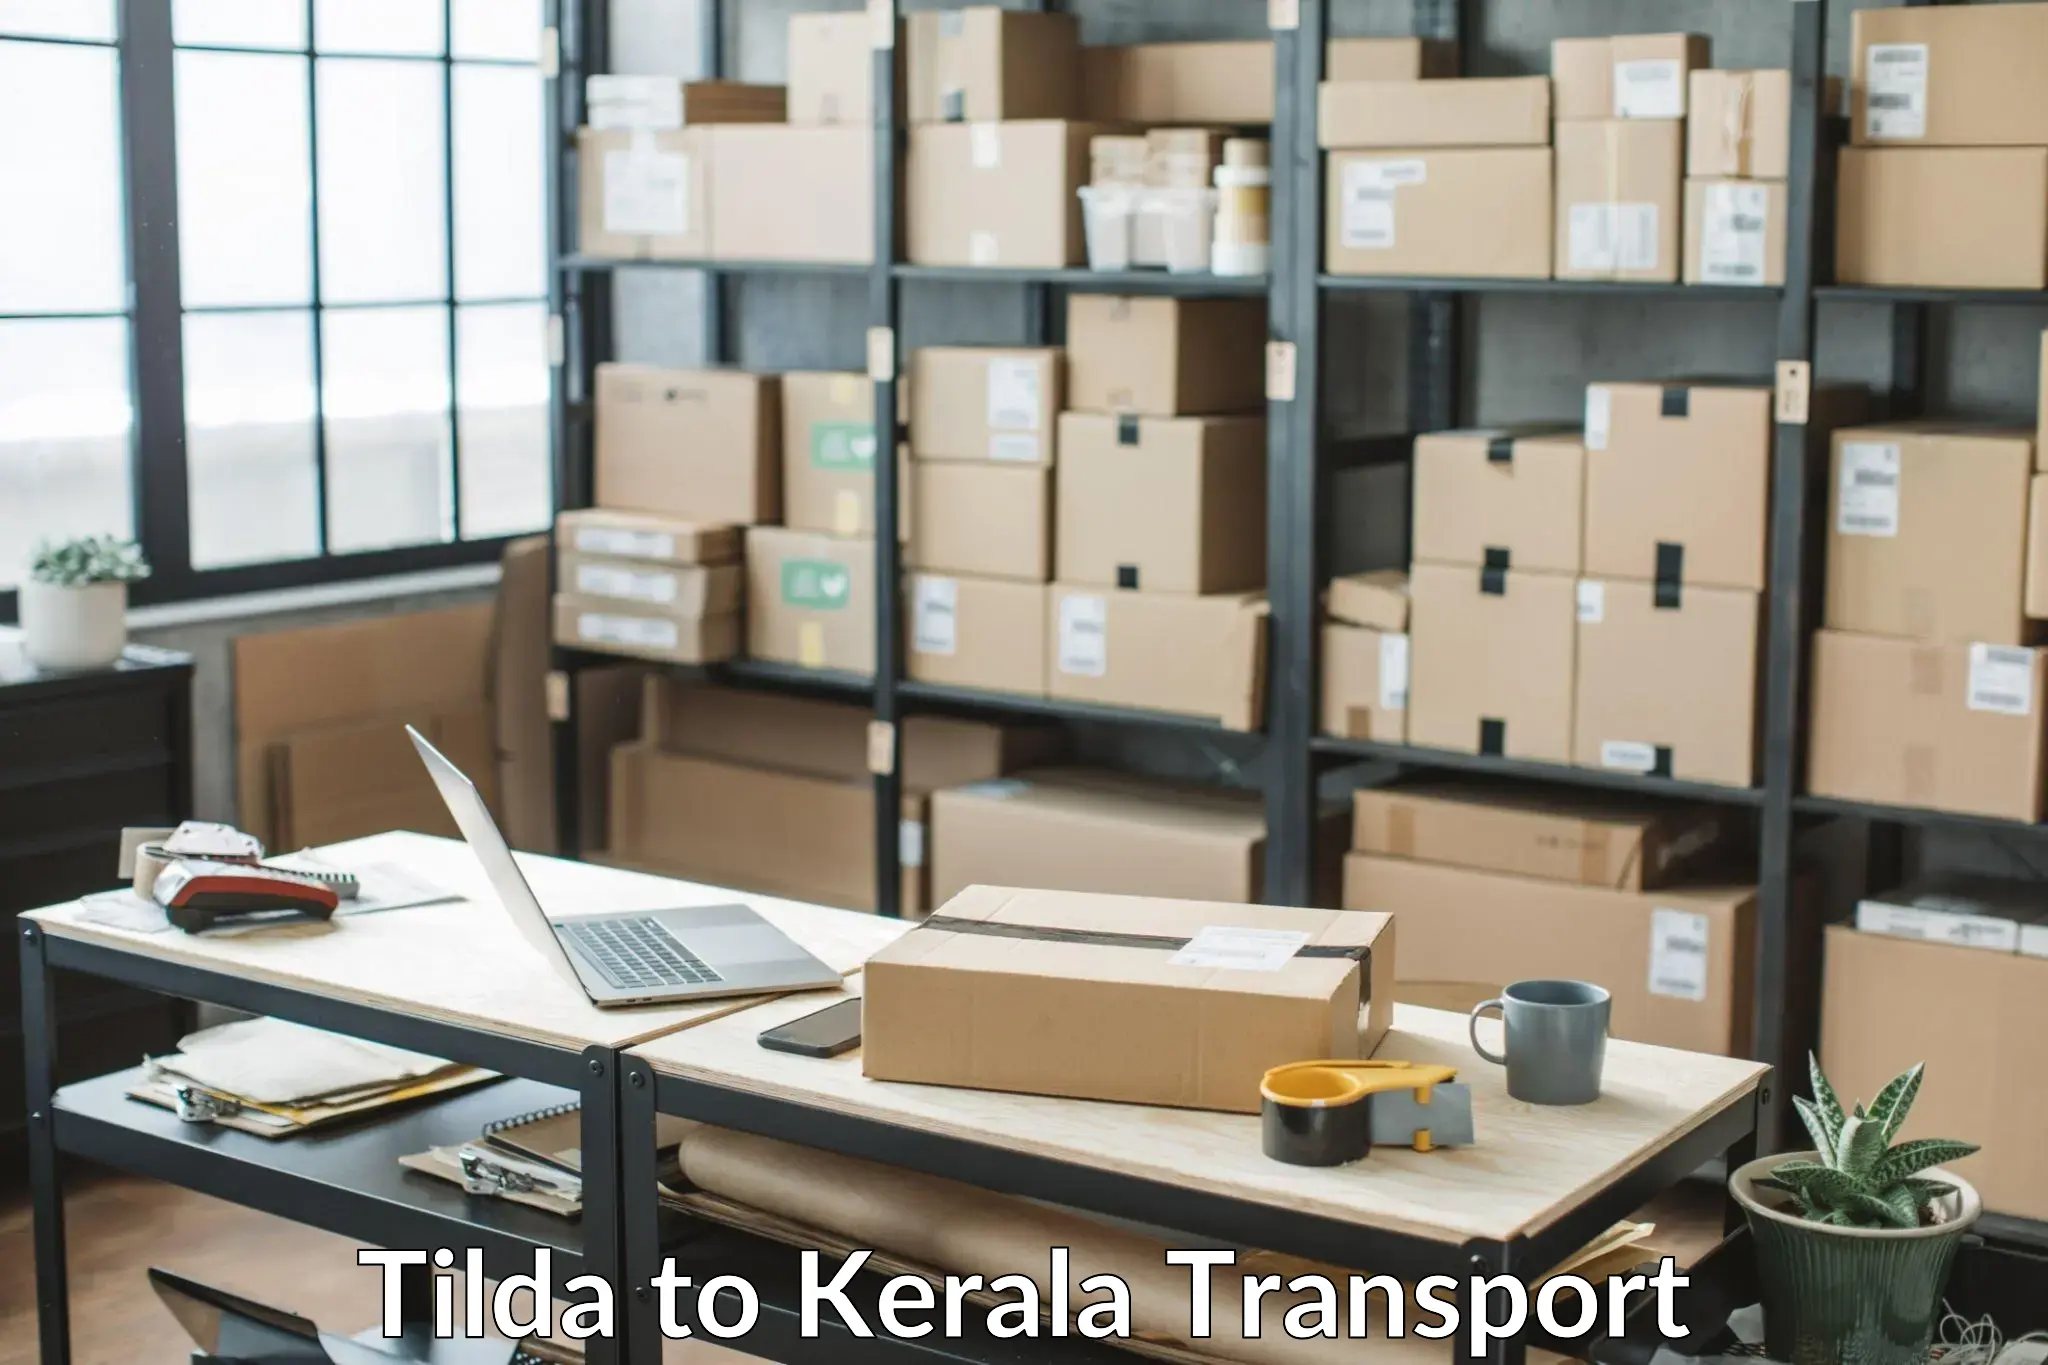 Container transport service Tilda to Perambra